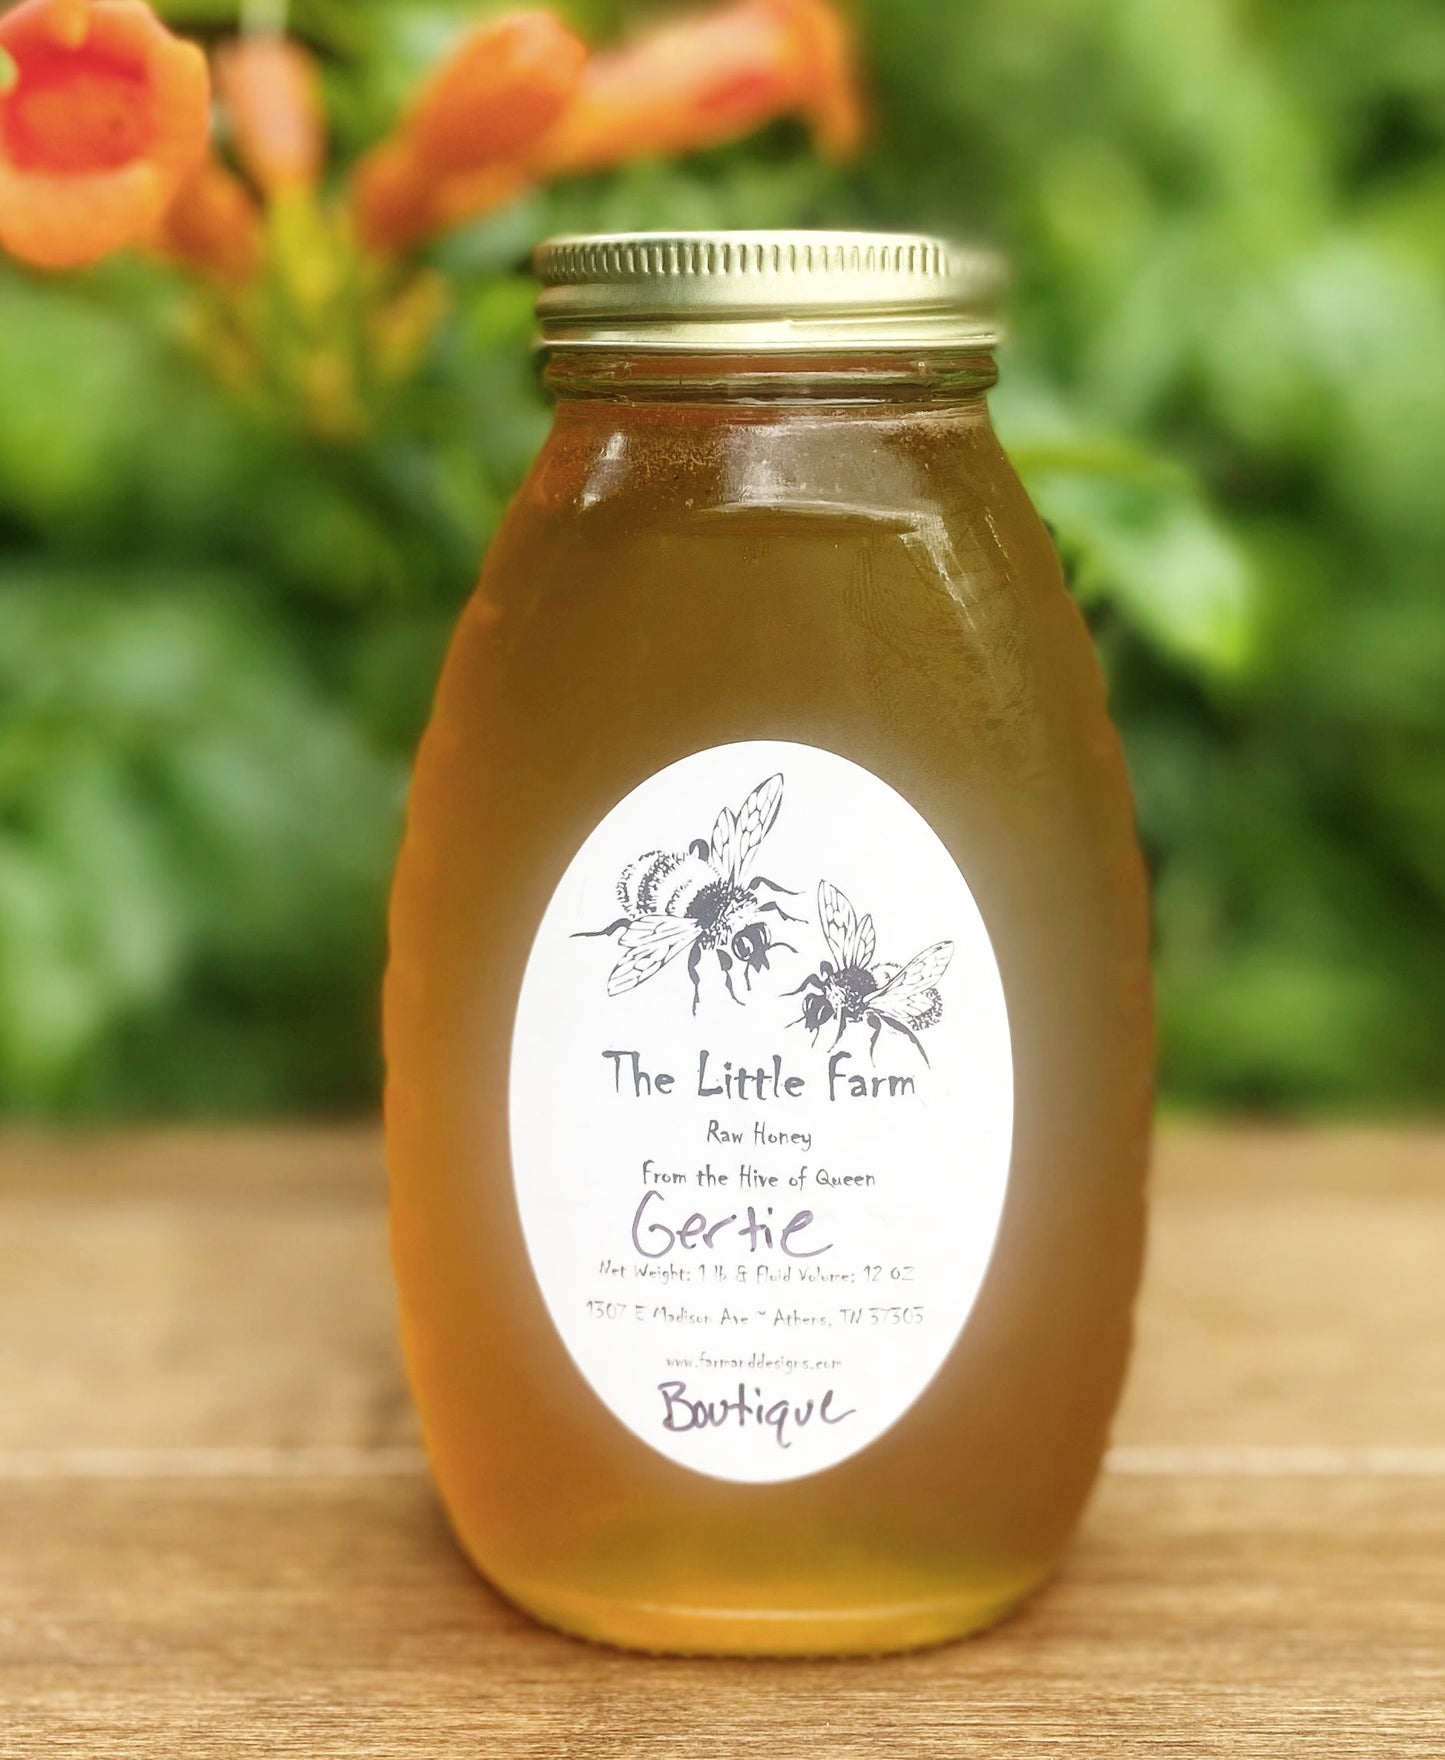 Best of the Best Boutique Honey from Queen Gertie's Hive